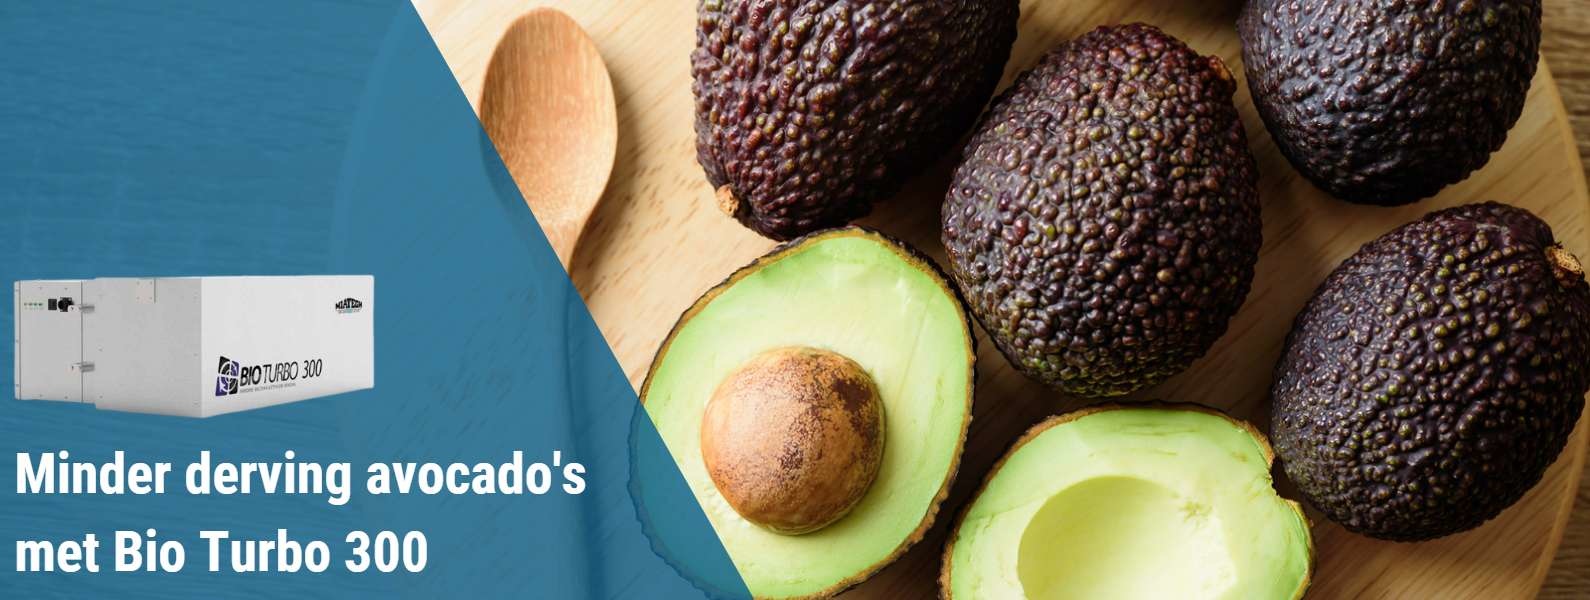 Minder derving avocado's met Bio Turbo 300